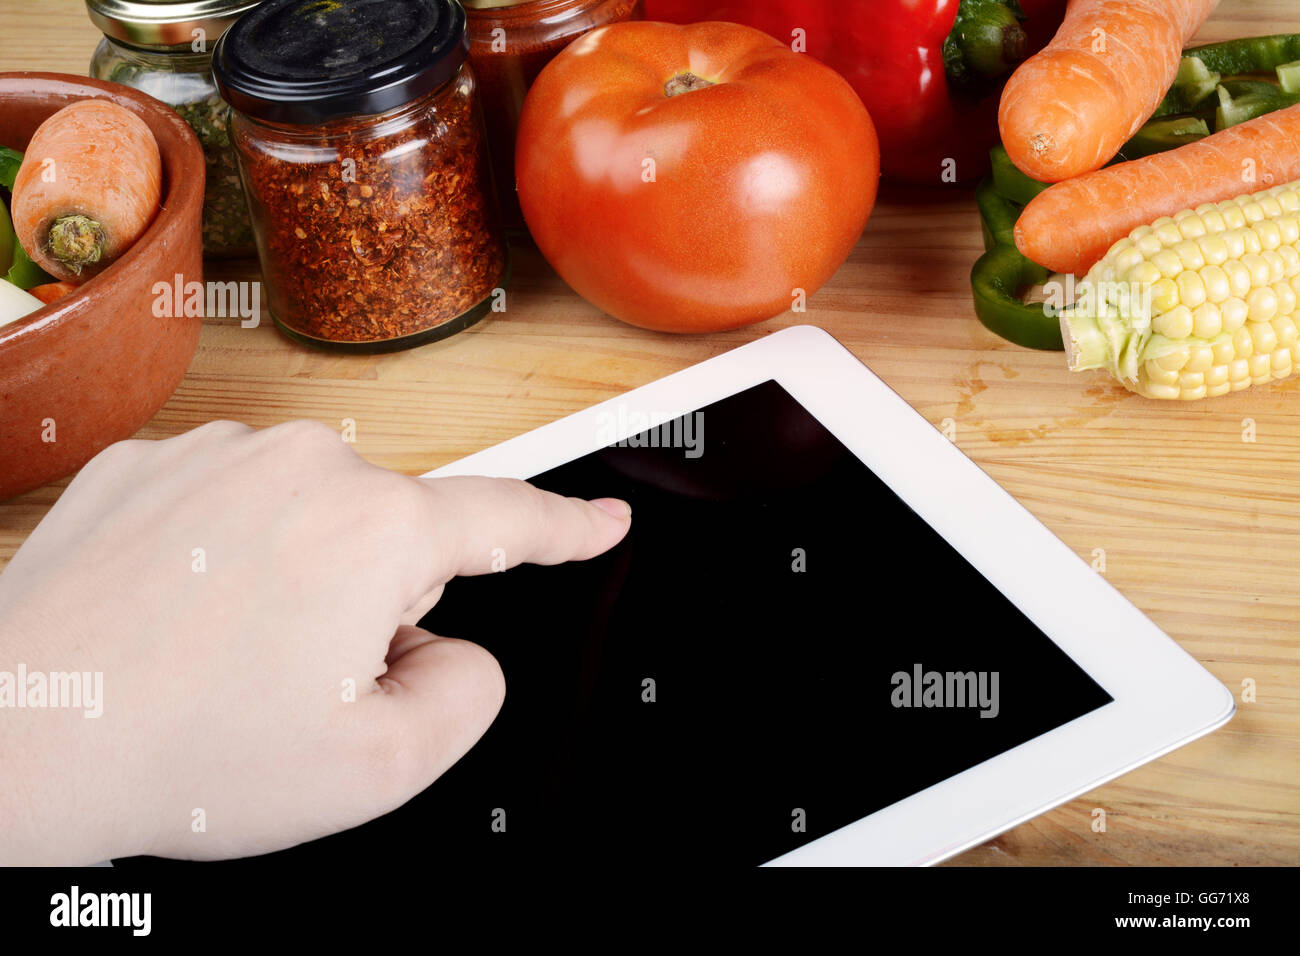 Personne de préparer des aliments à partir de la fiche sur tablette avec légumes et épices. Concept d'aliments sains. Banque D'Images